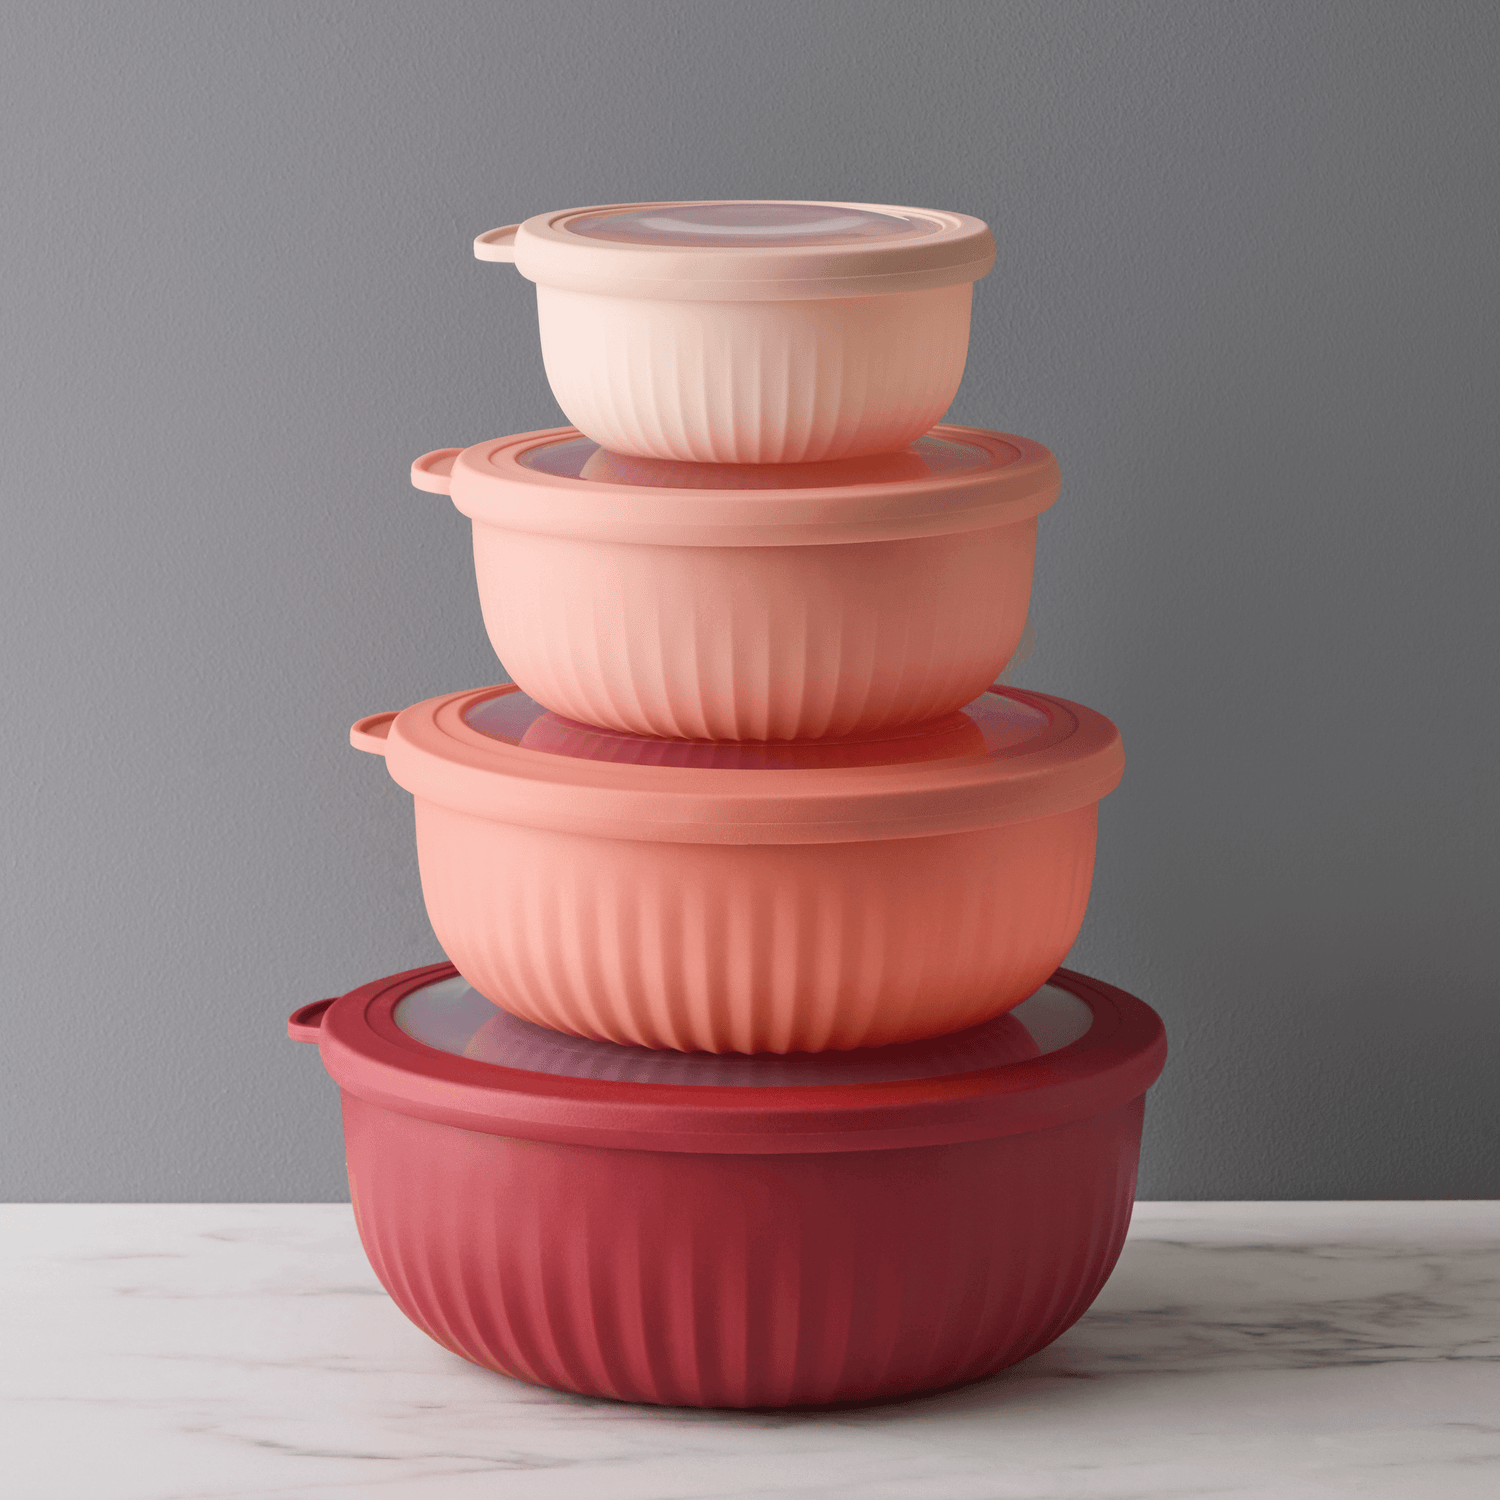 Cook with Color Plastic Prep Bowls - Mini Bowls with Lids, 8 Piece Nesting Bowls Set Includes 4 Prep Bowls and 4 Lids (Ombre Blue)